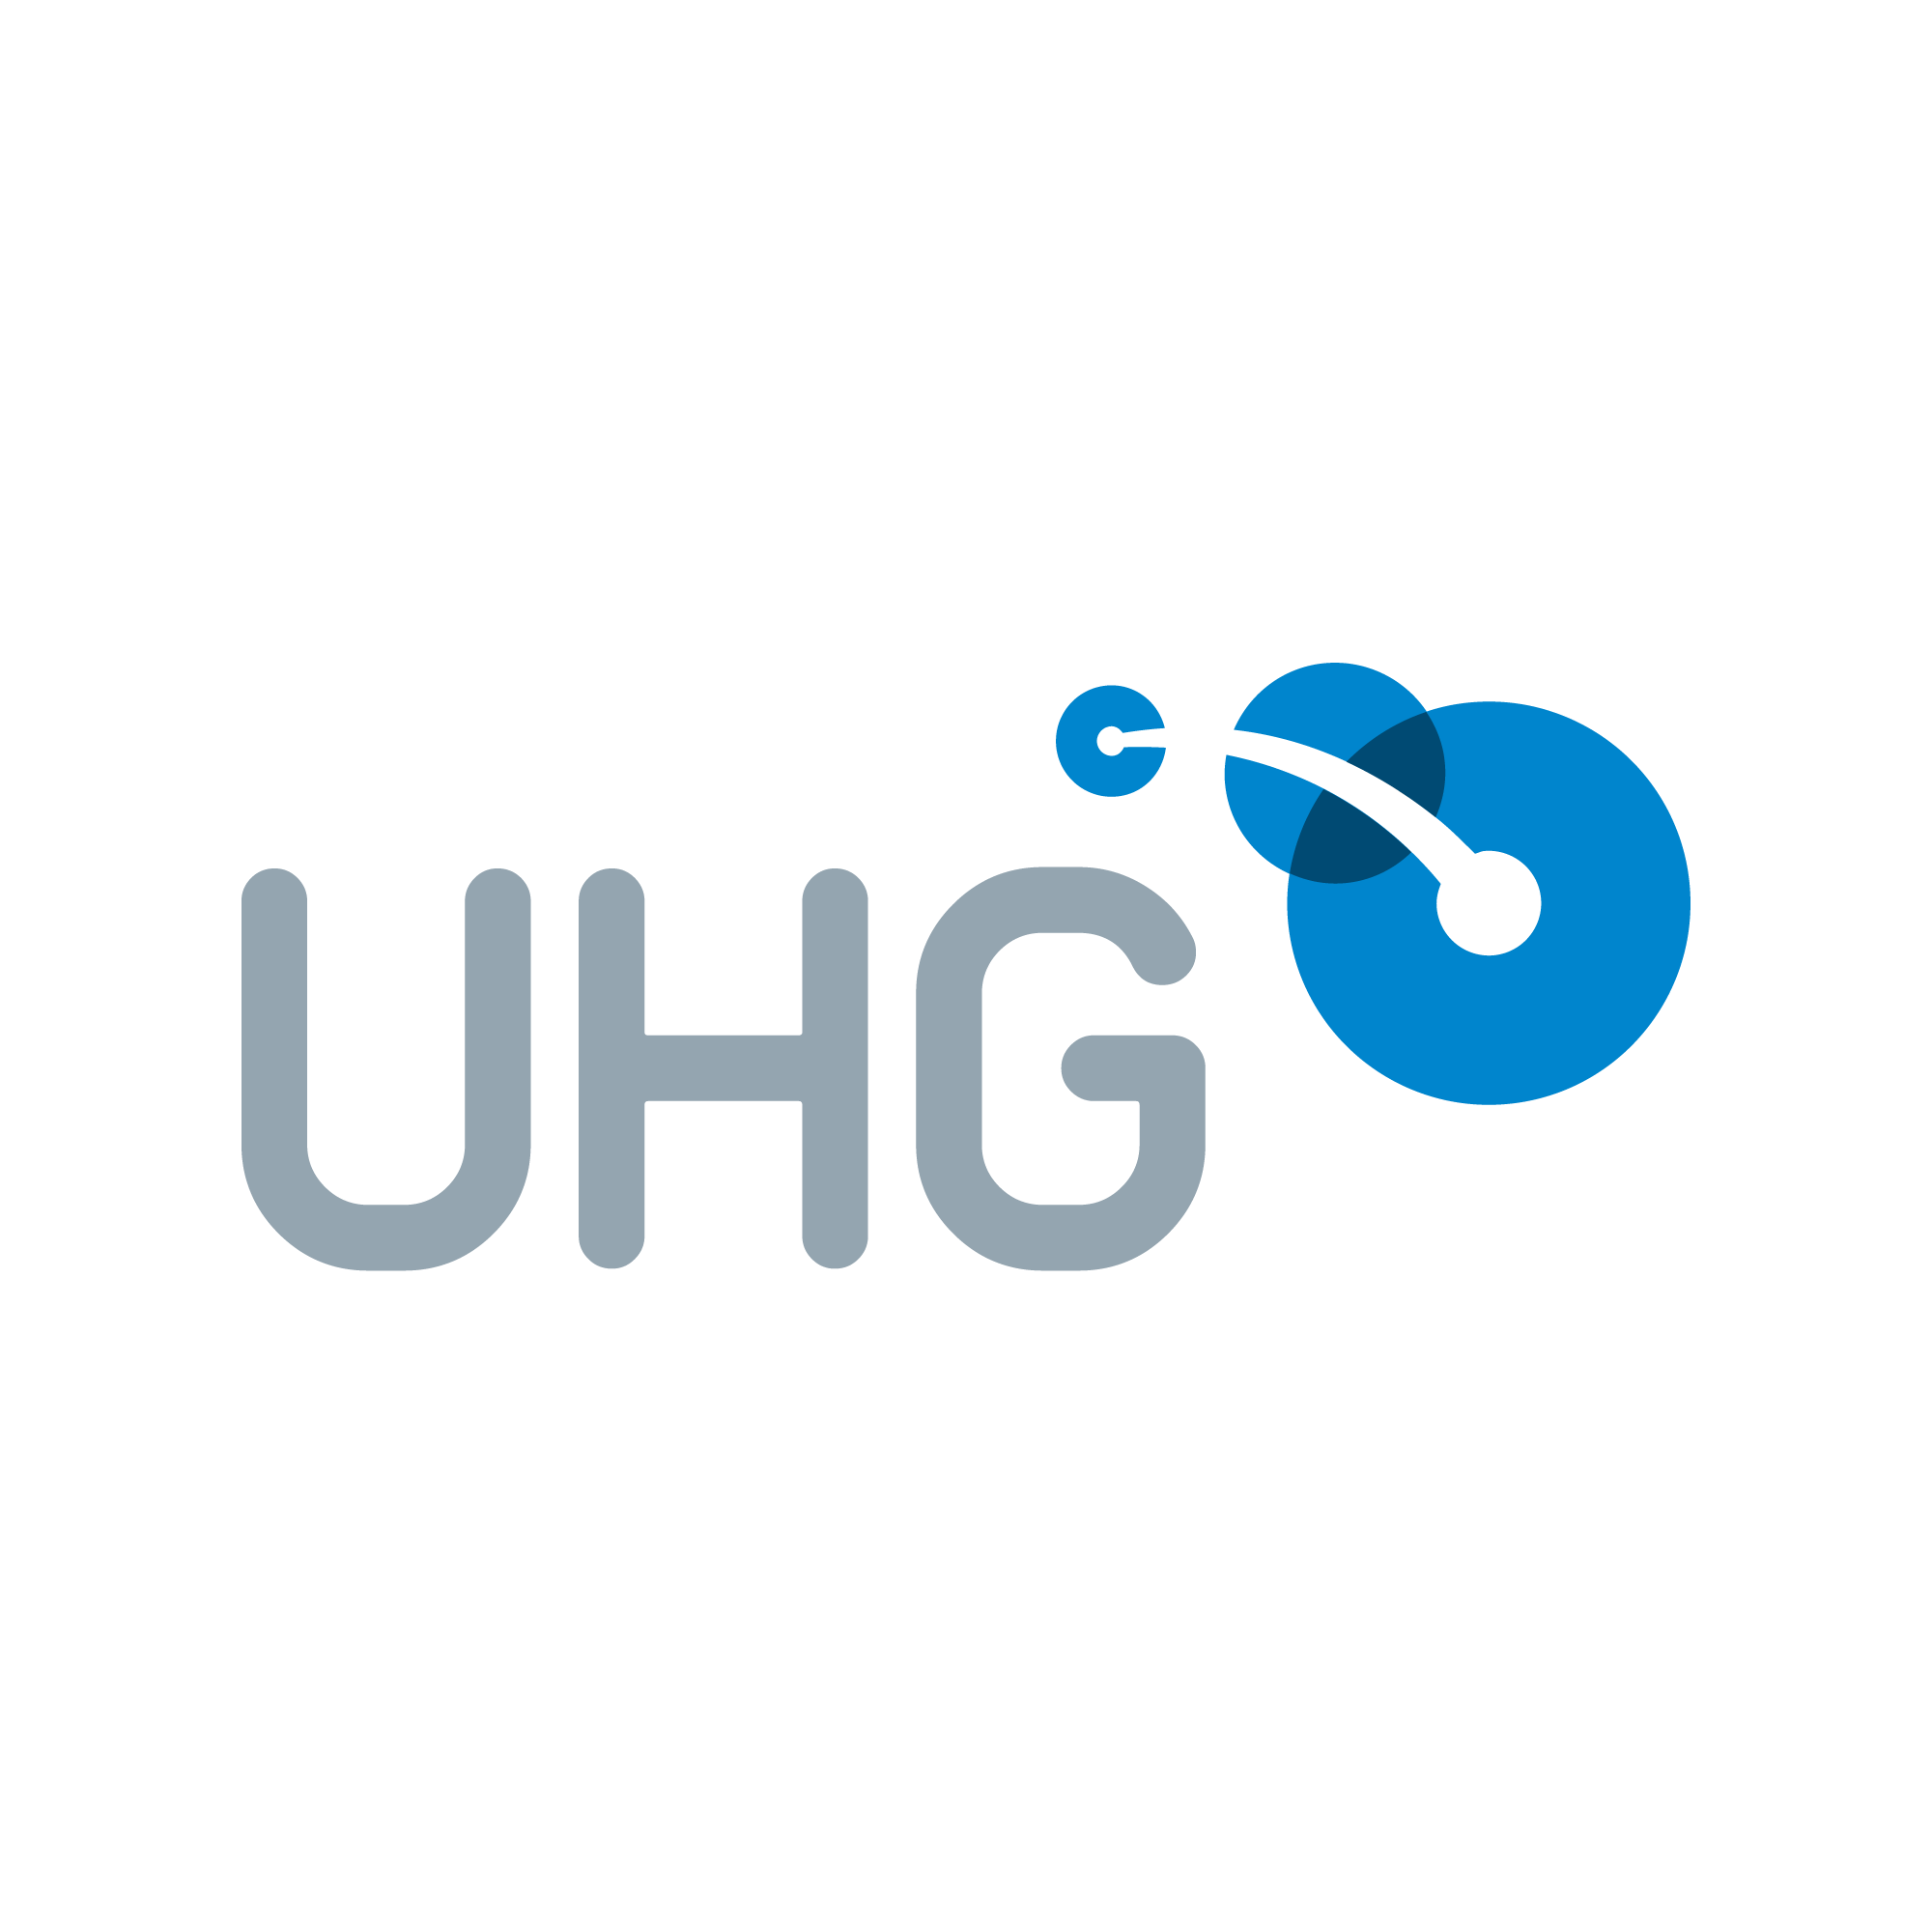 Uhg Logo - UHG. Certified B Corporation